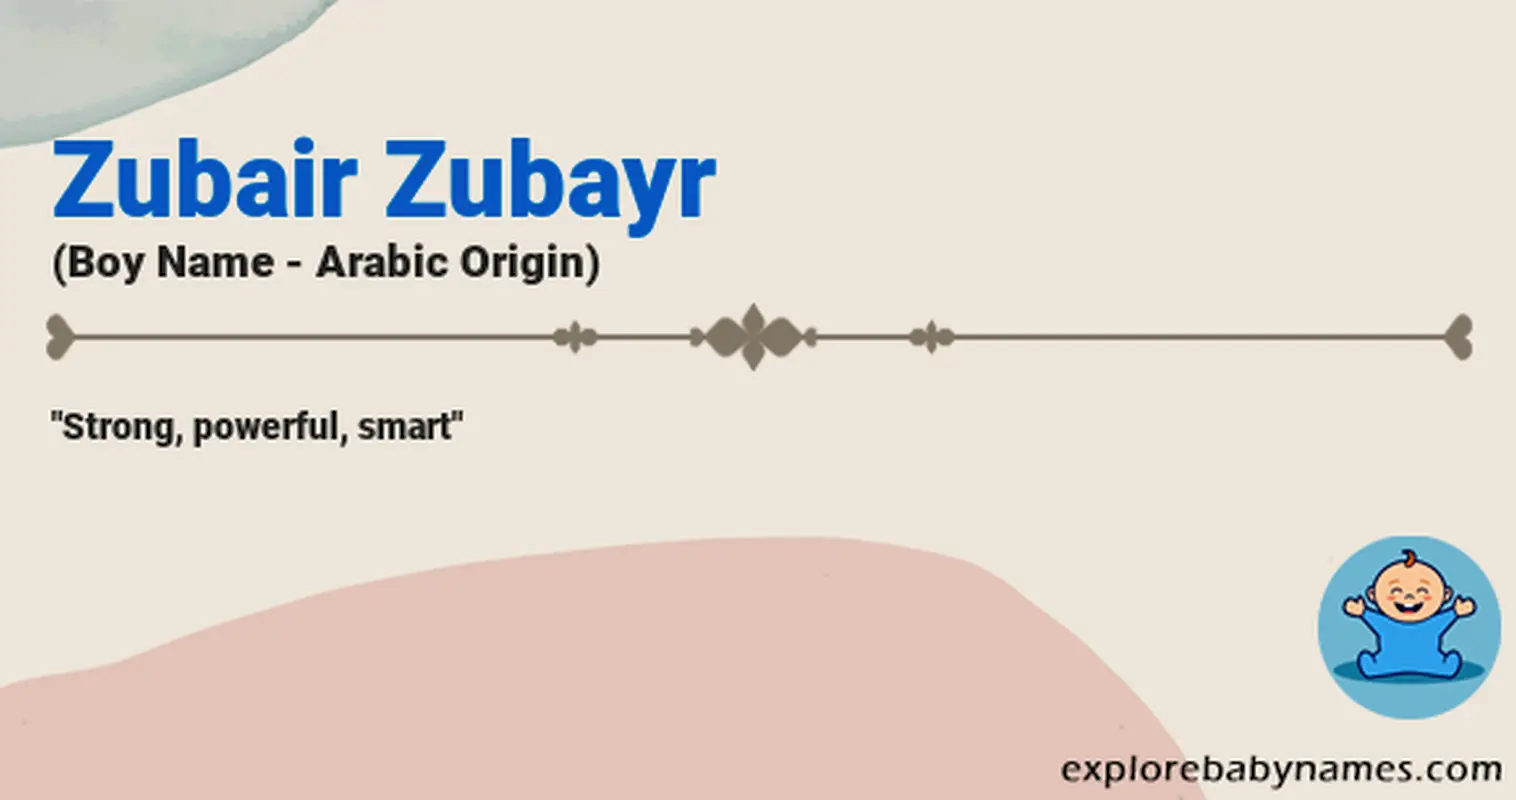 Meaning of Zubair Zubayr